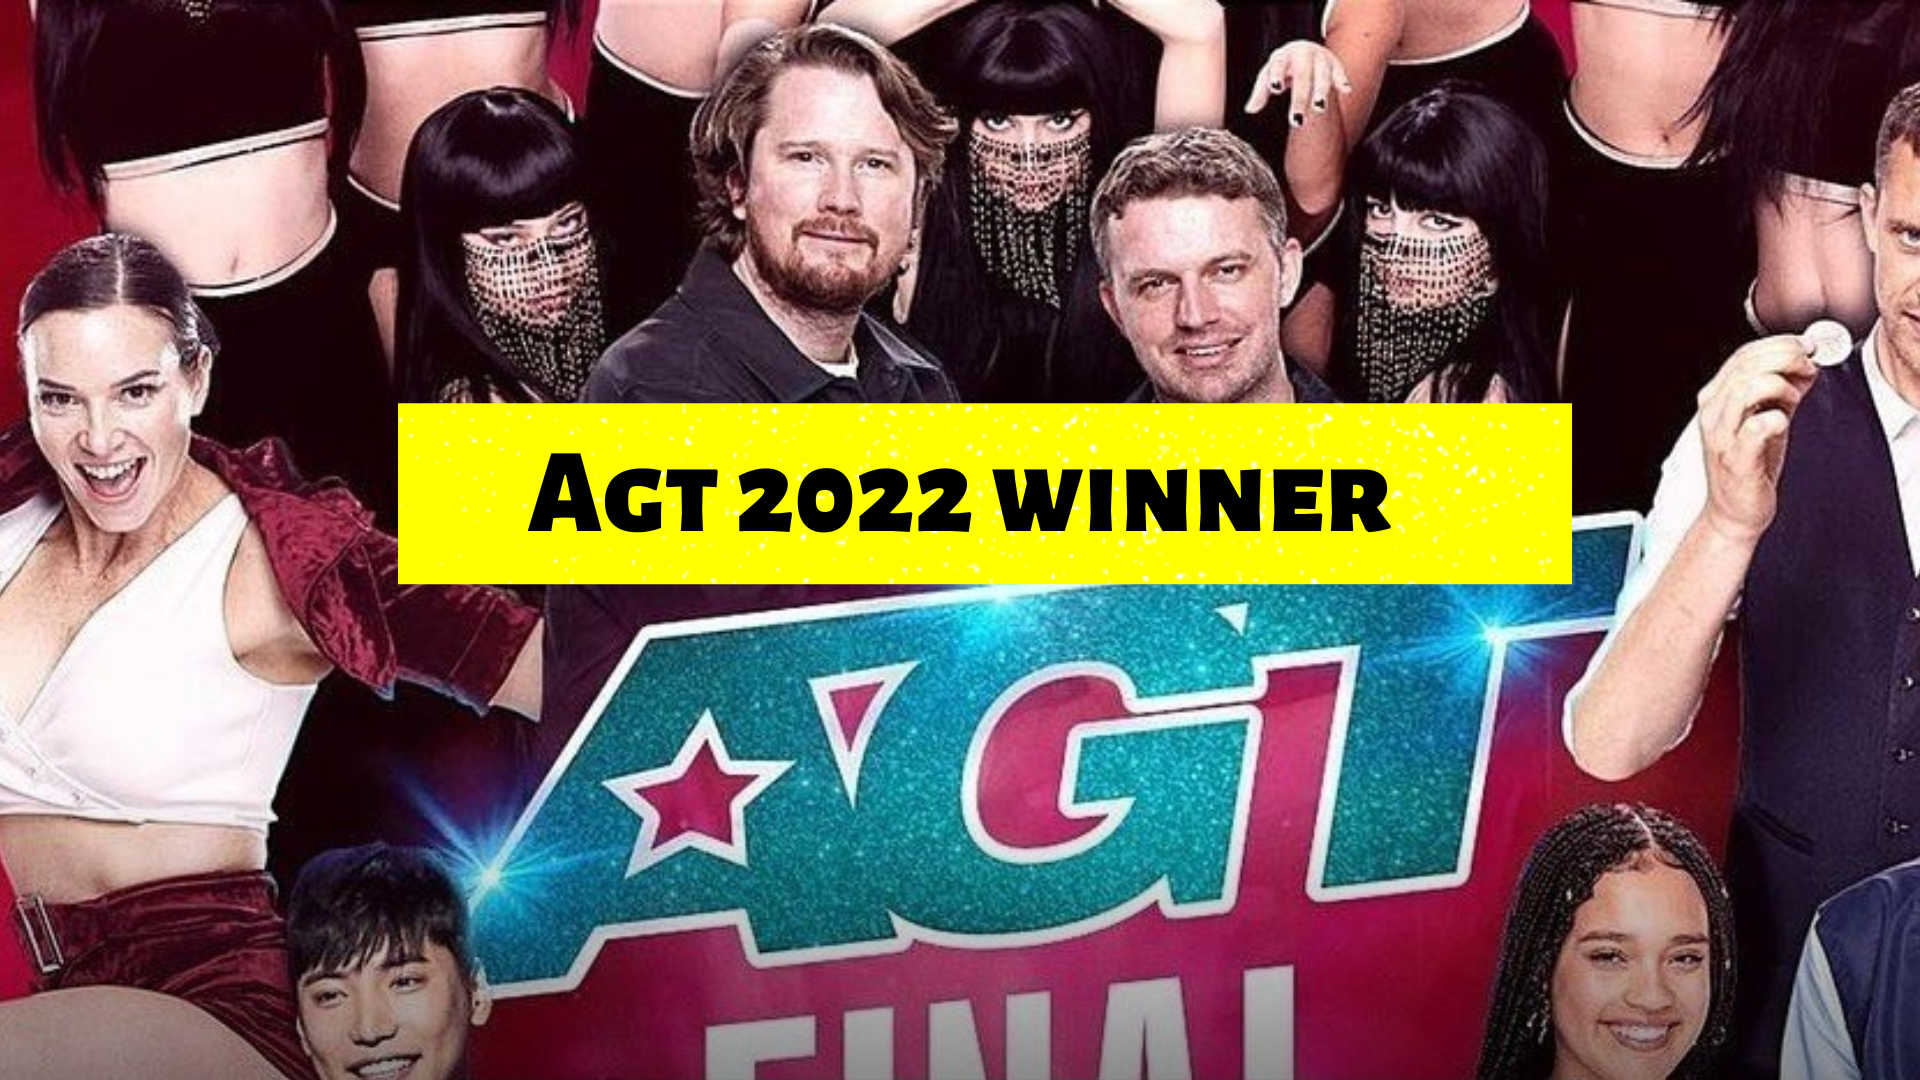 AGT 2022 winner